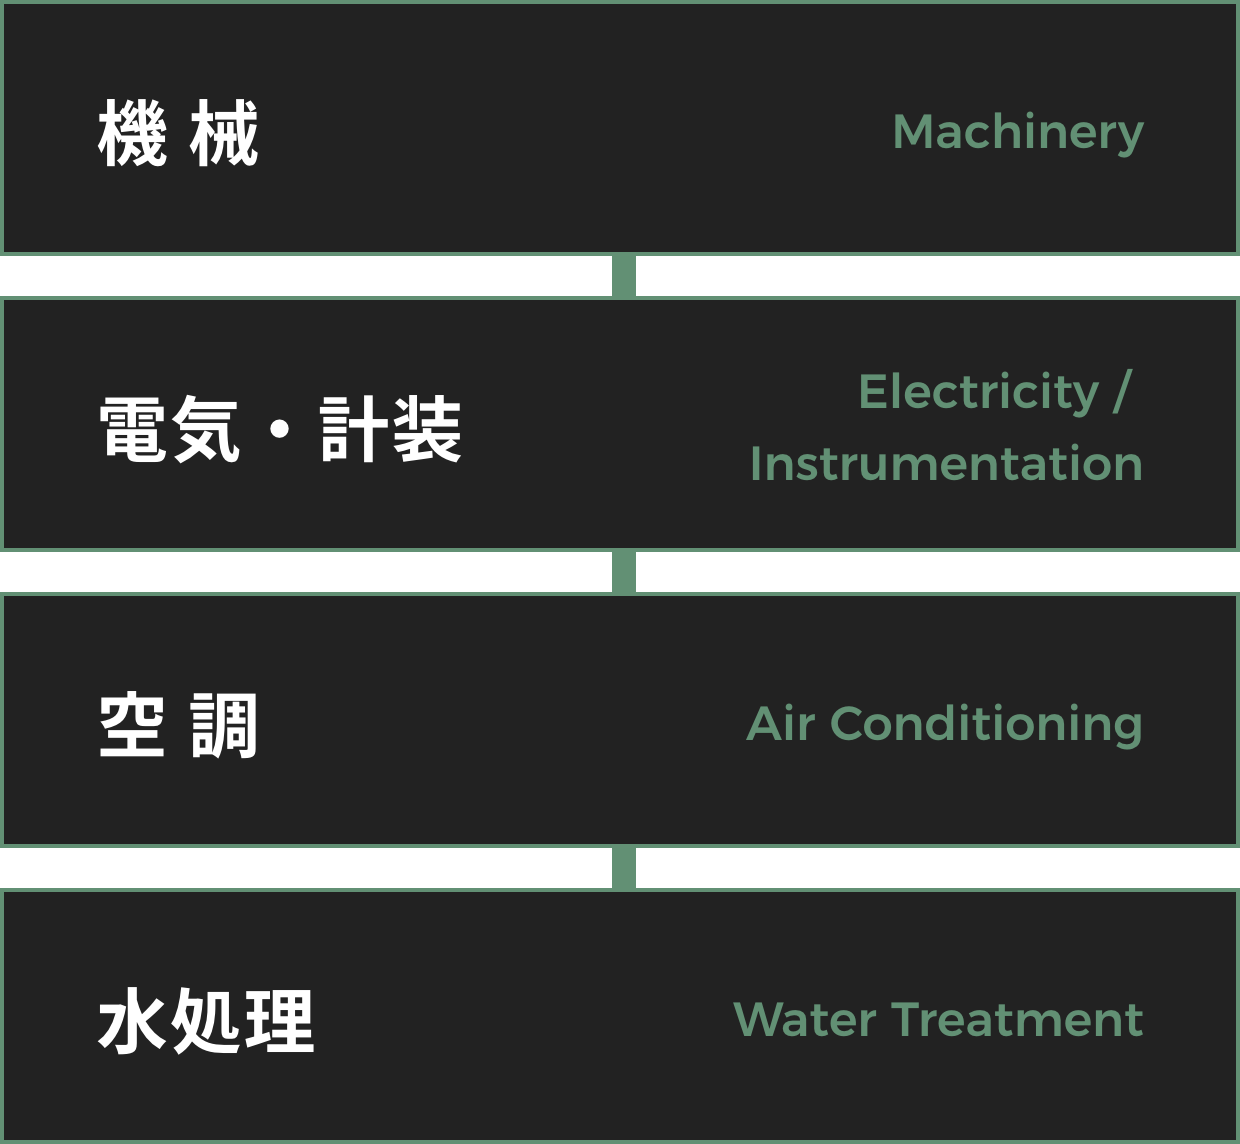 機械、電気・計装、空調、水処理